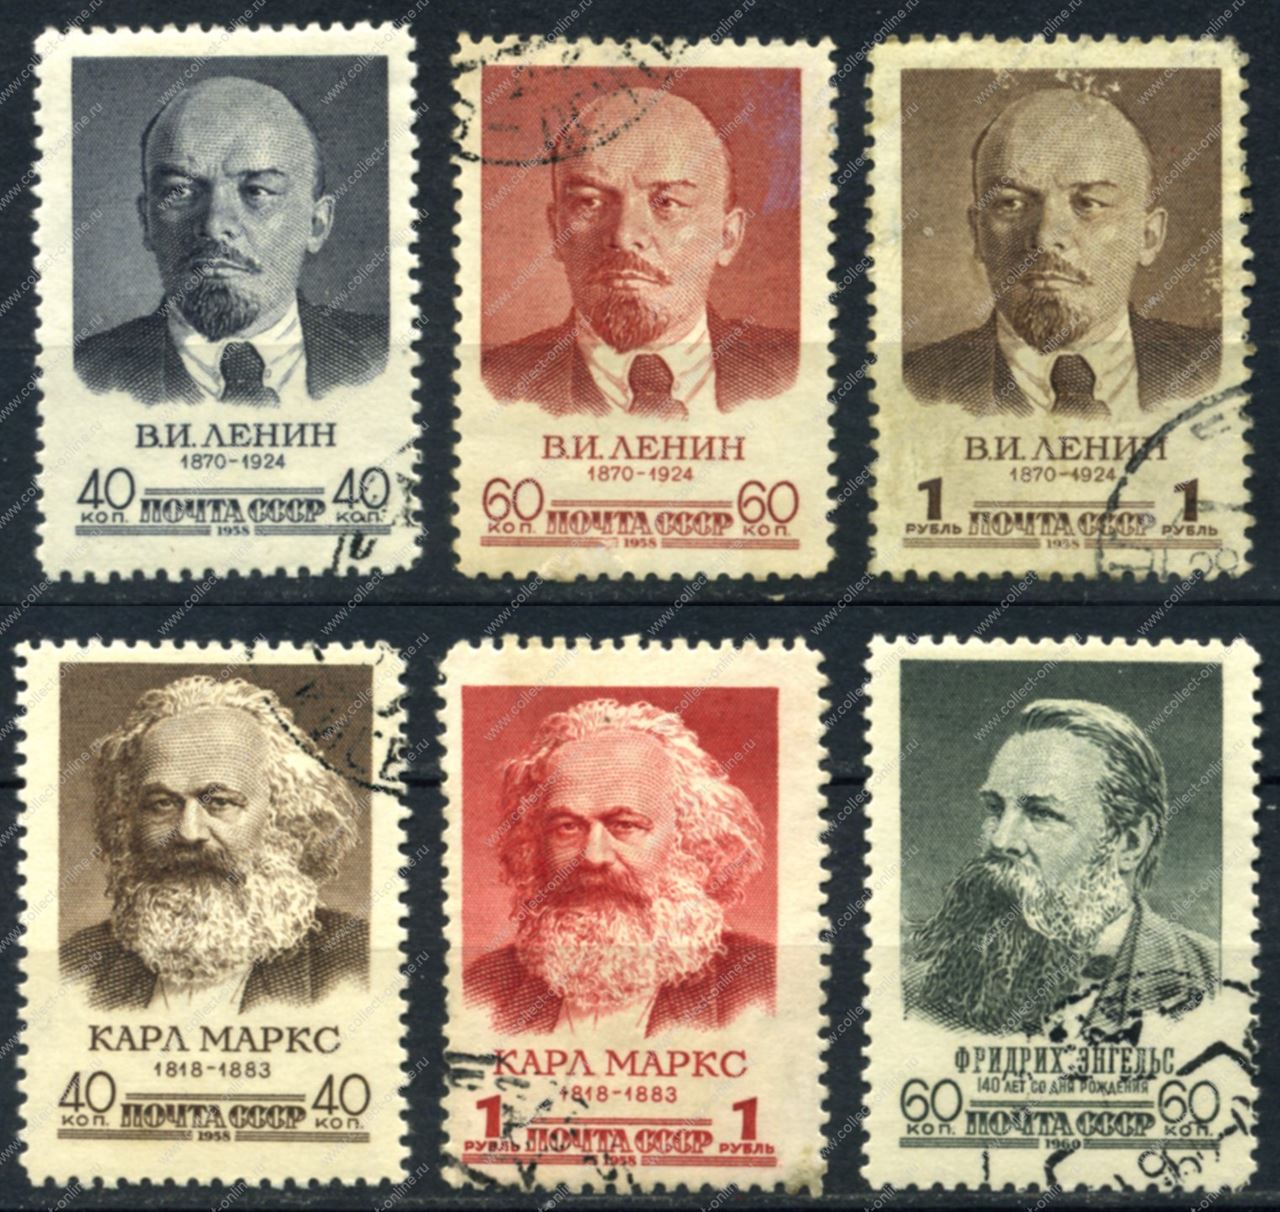 Карл Маркс, Фридрих Энгельс, Владимир Ленин, Иосиф Сталин